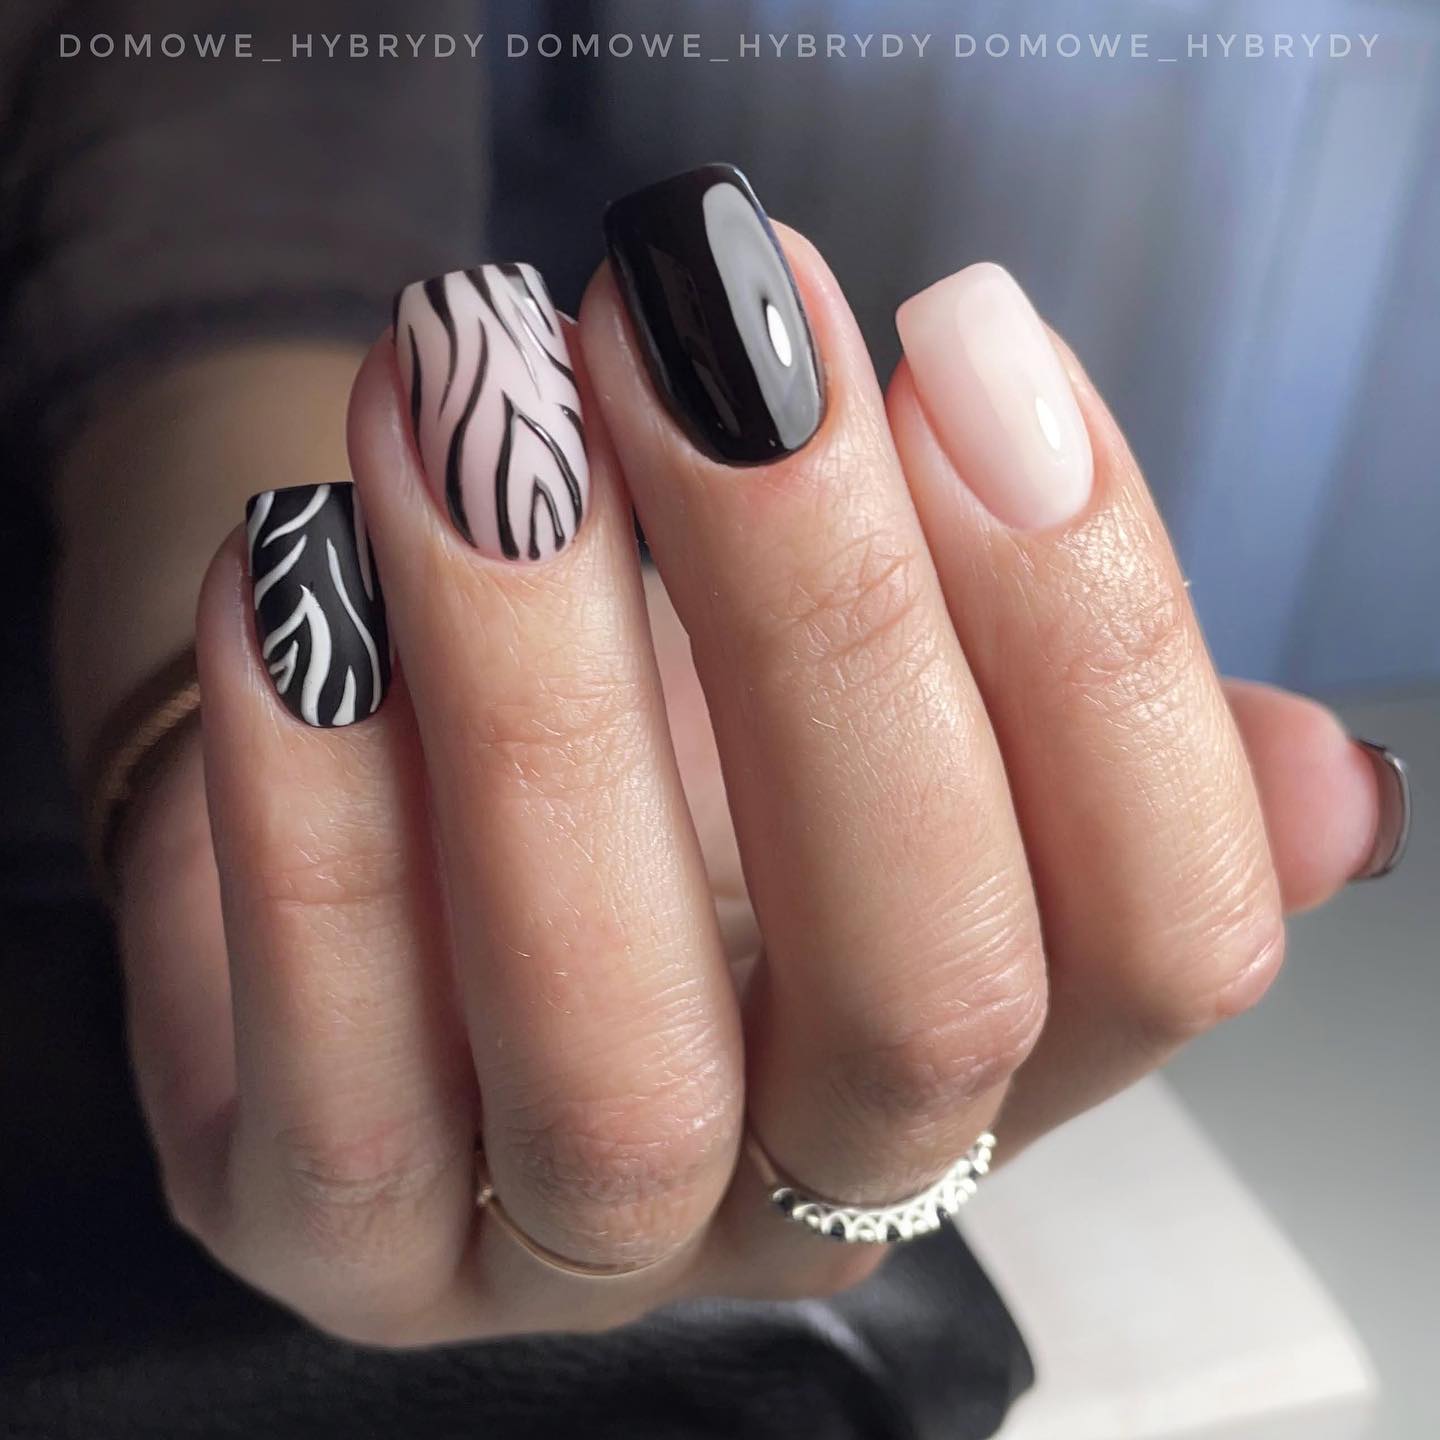 El arte de uñas de cebra es un diseño que utiliza rayas blancas y negras para crear un patrón similar a una cebra en las uñas.  Tus uñas cortas se llevarán a un nivel diferente con las uñas con acento de cebra.